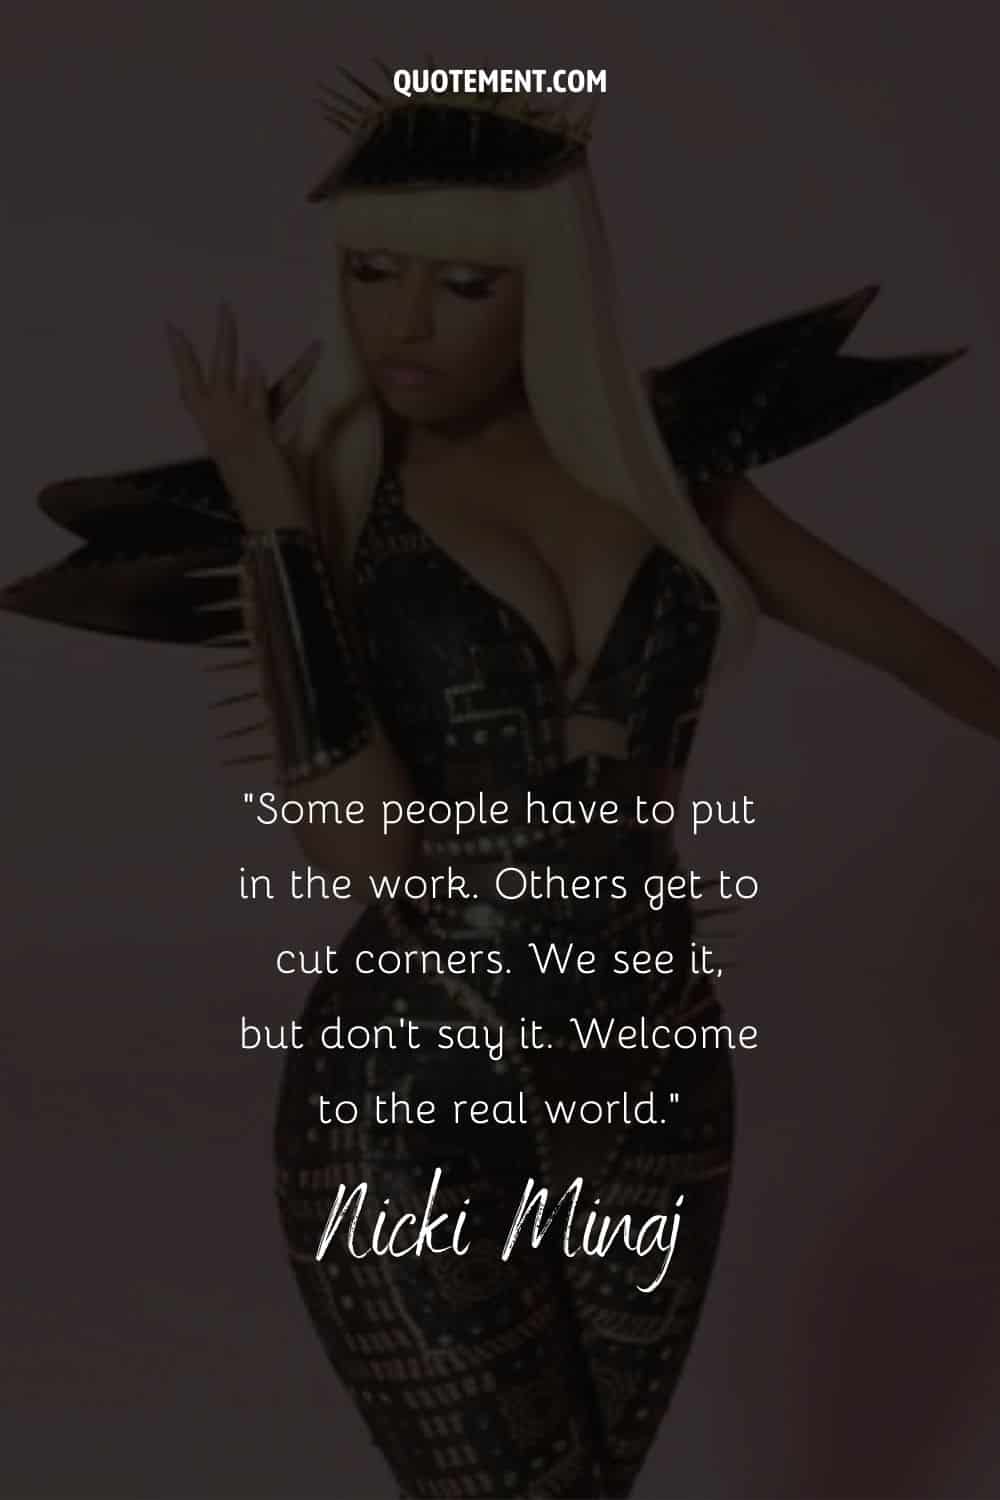 Cita inspiradora de Nicki Minaj y su imagen de fondo